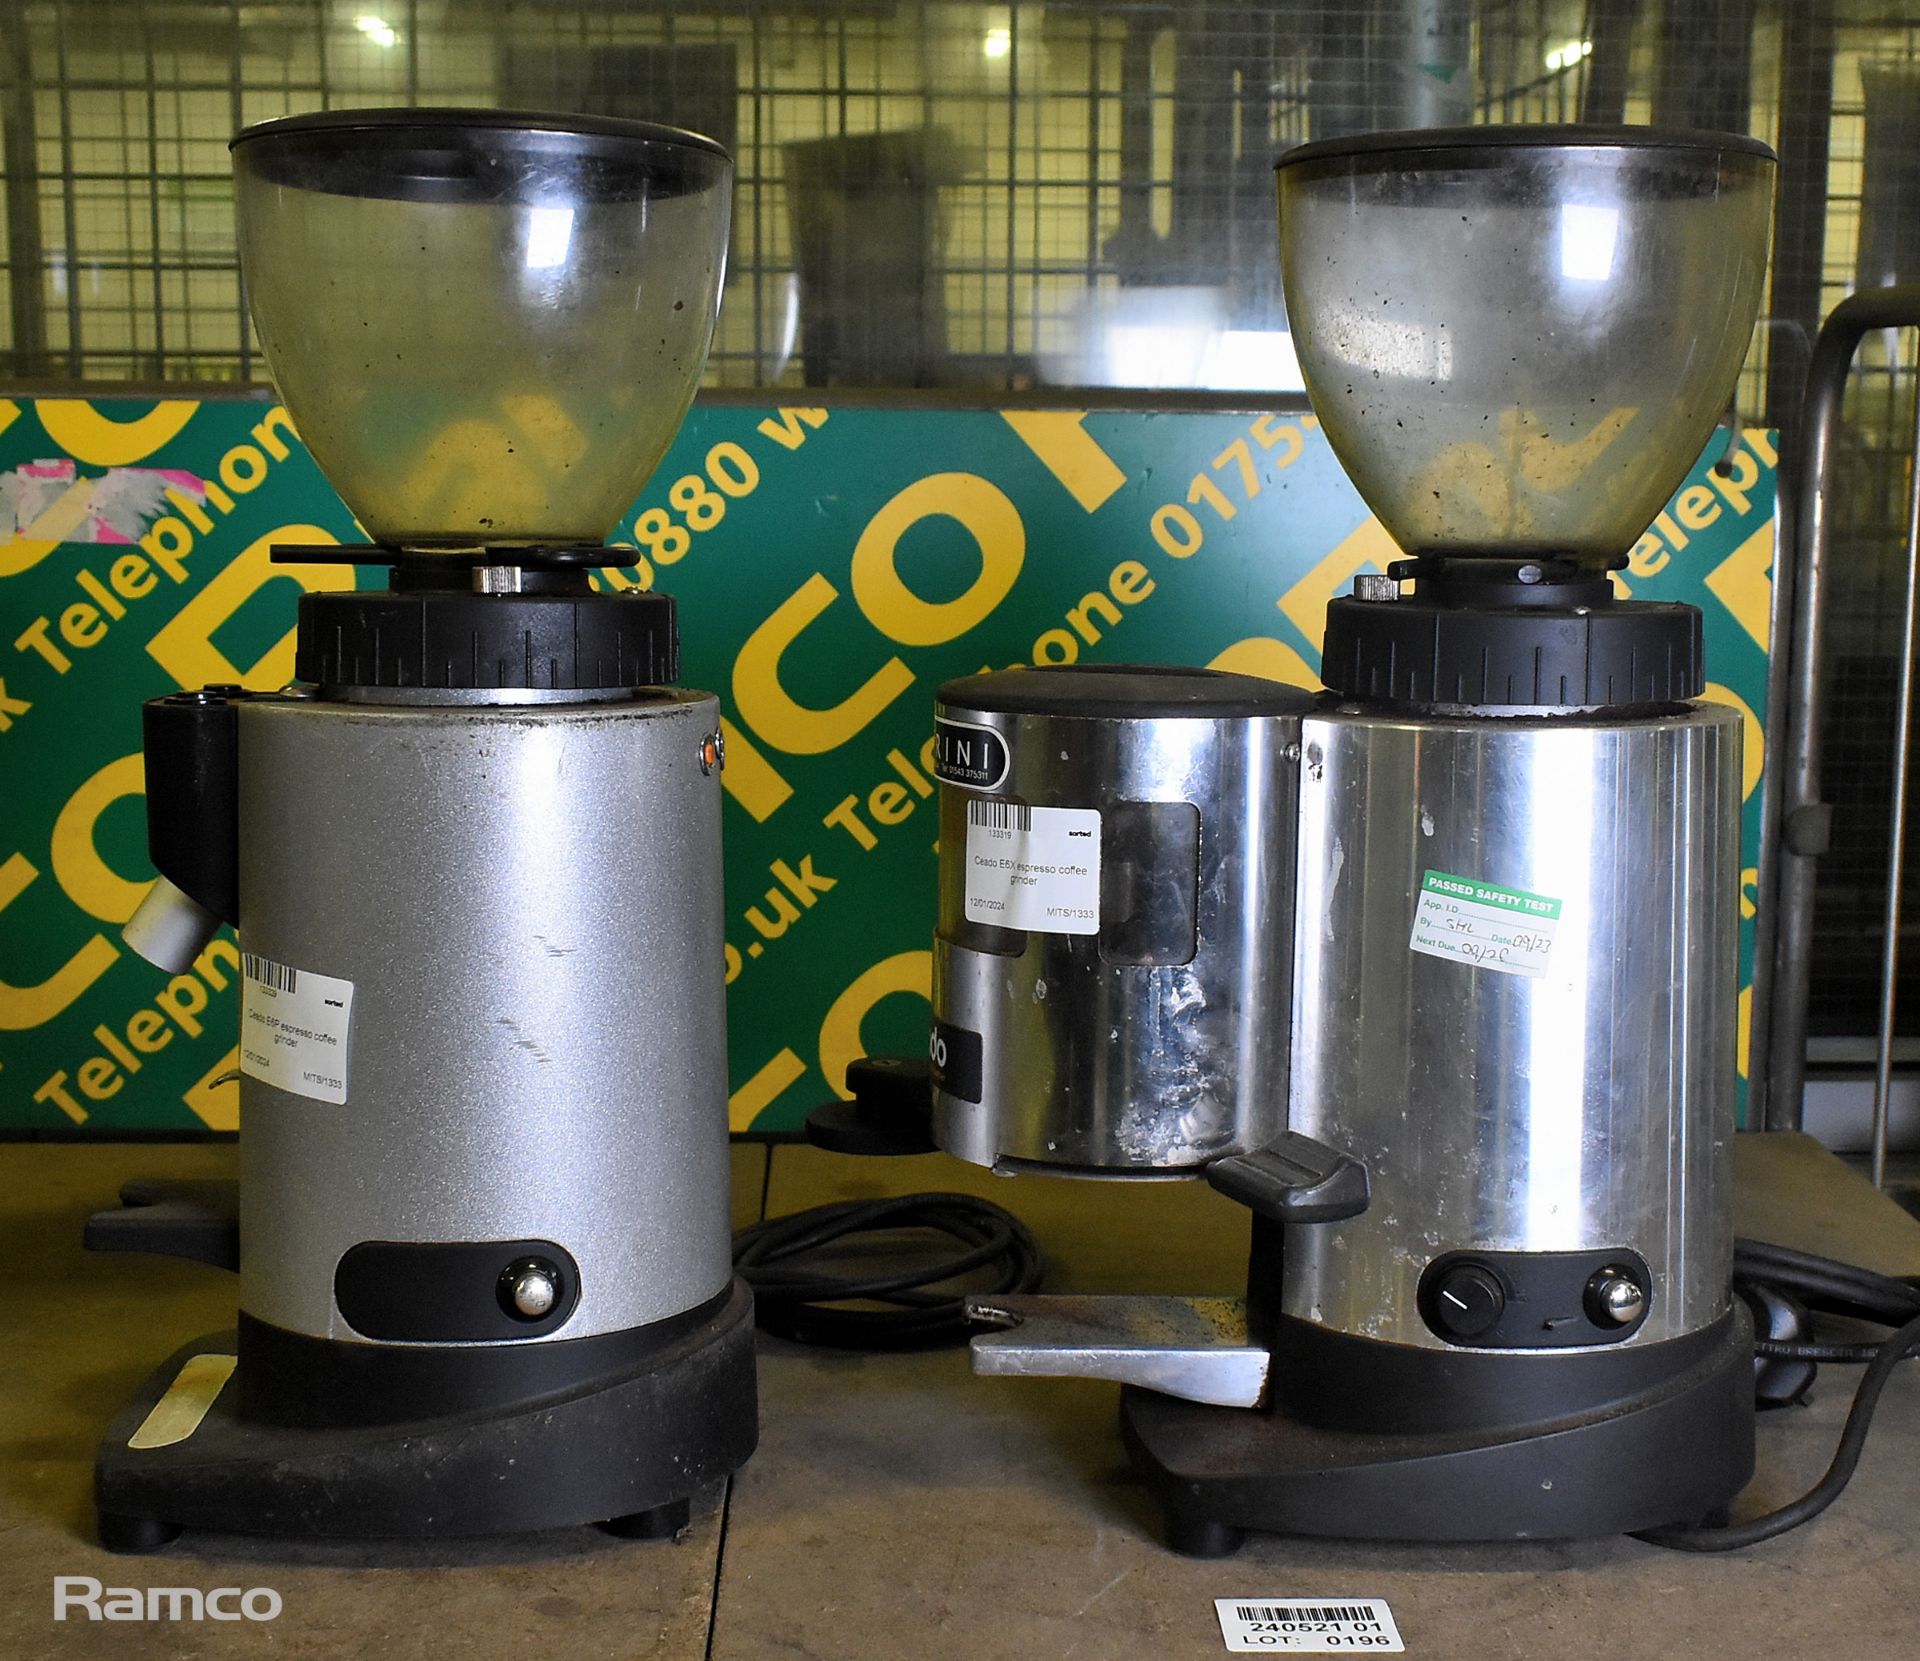 Ceado E6X espresso coffee grinder, Ceado E6P espresso coffee grinder - Image 2 of 6